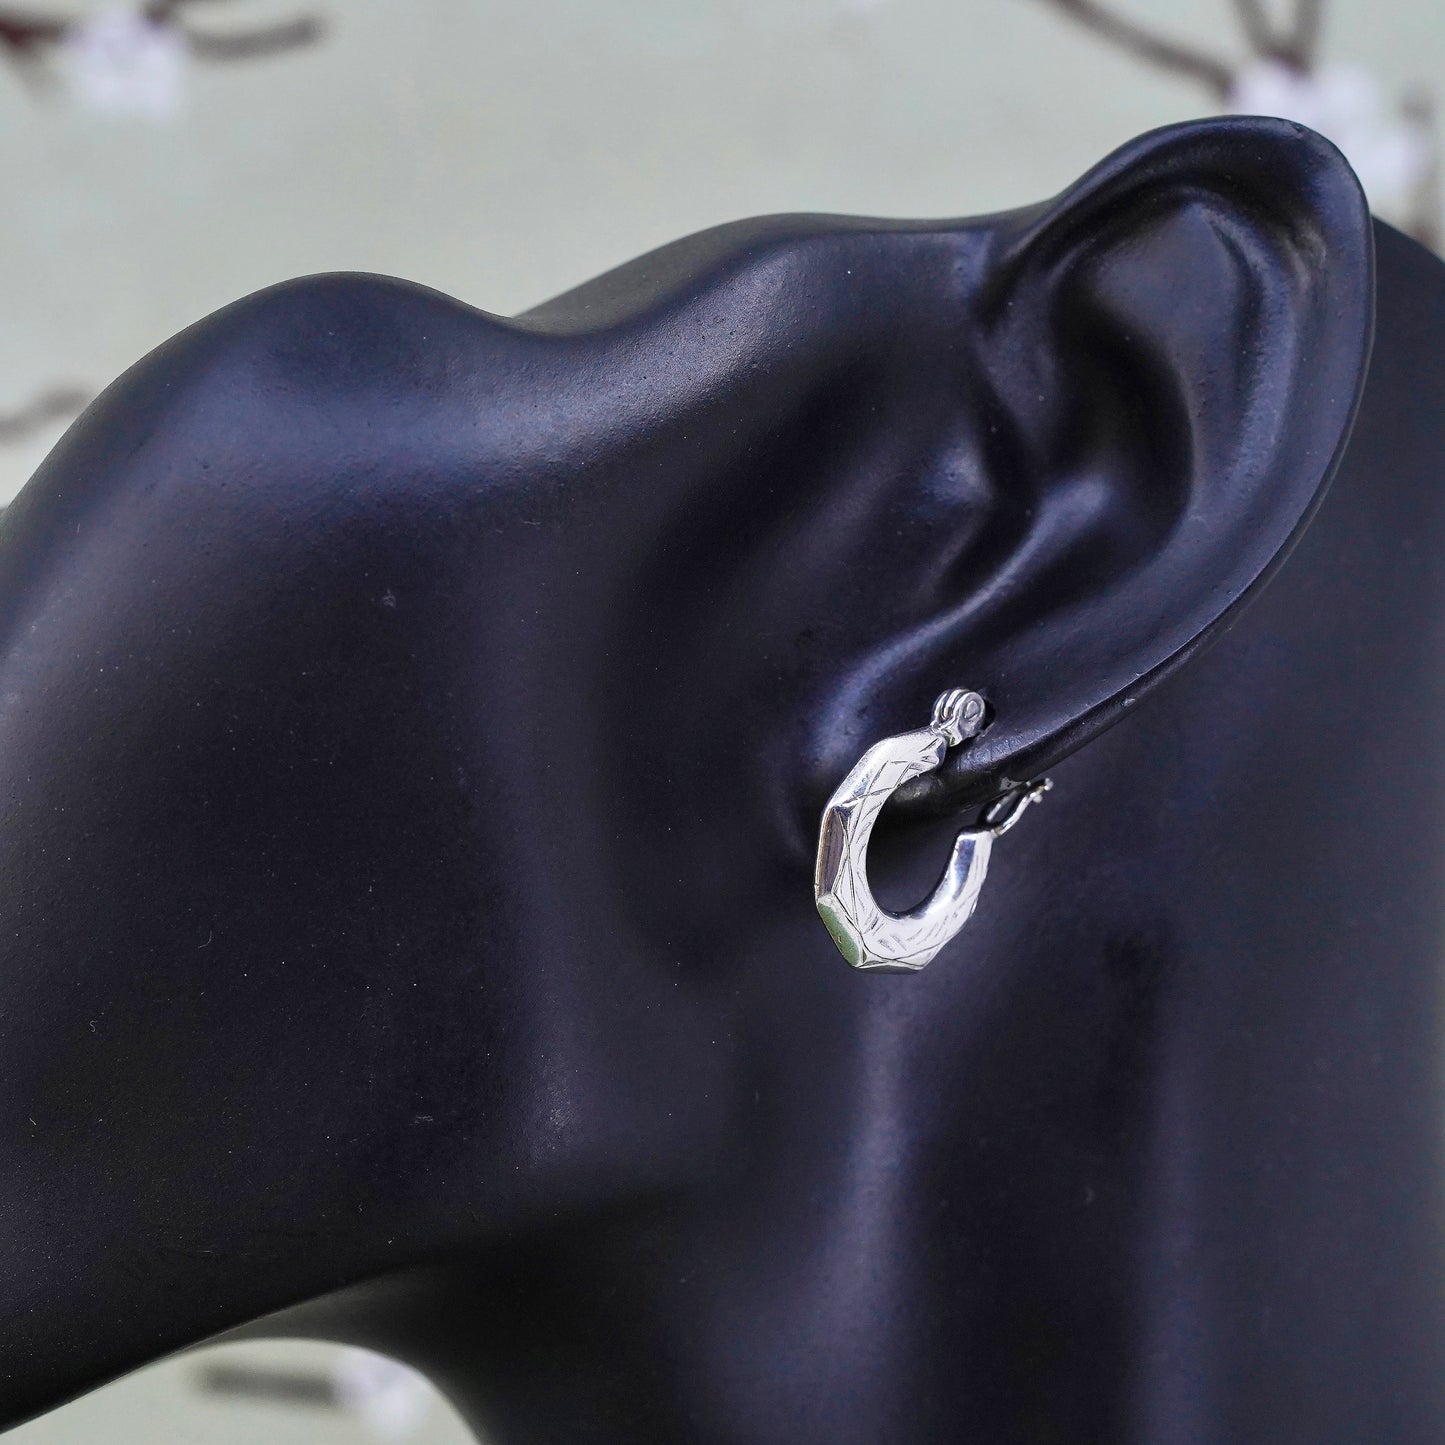 0.5", VTG sterling silver loop earrings, textured minimalist primitive hoops